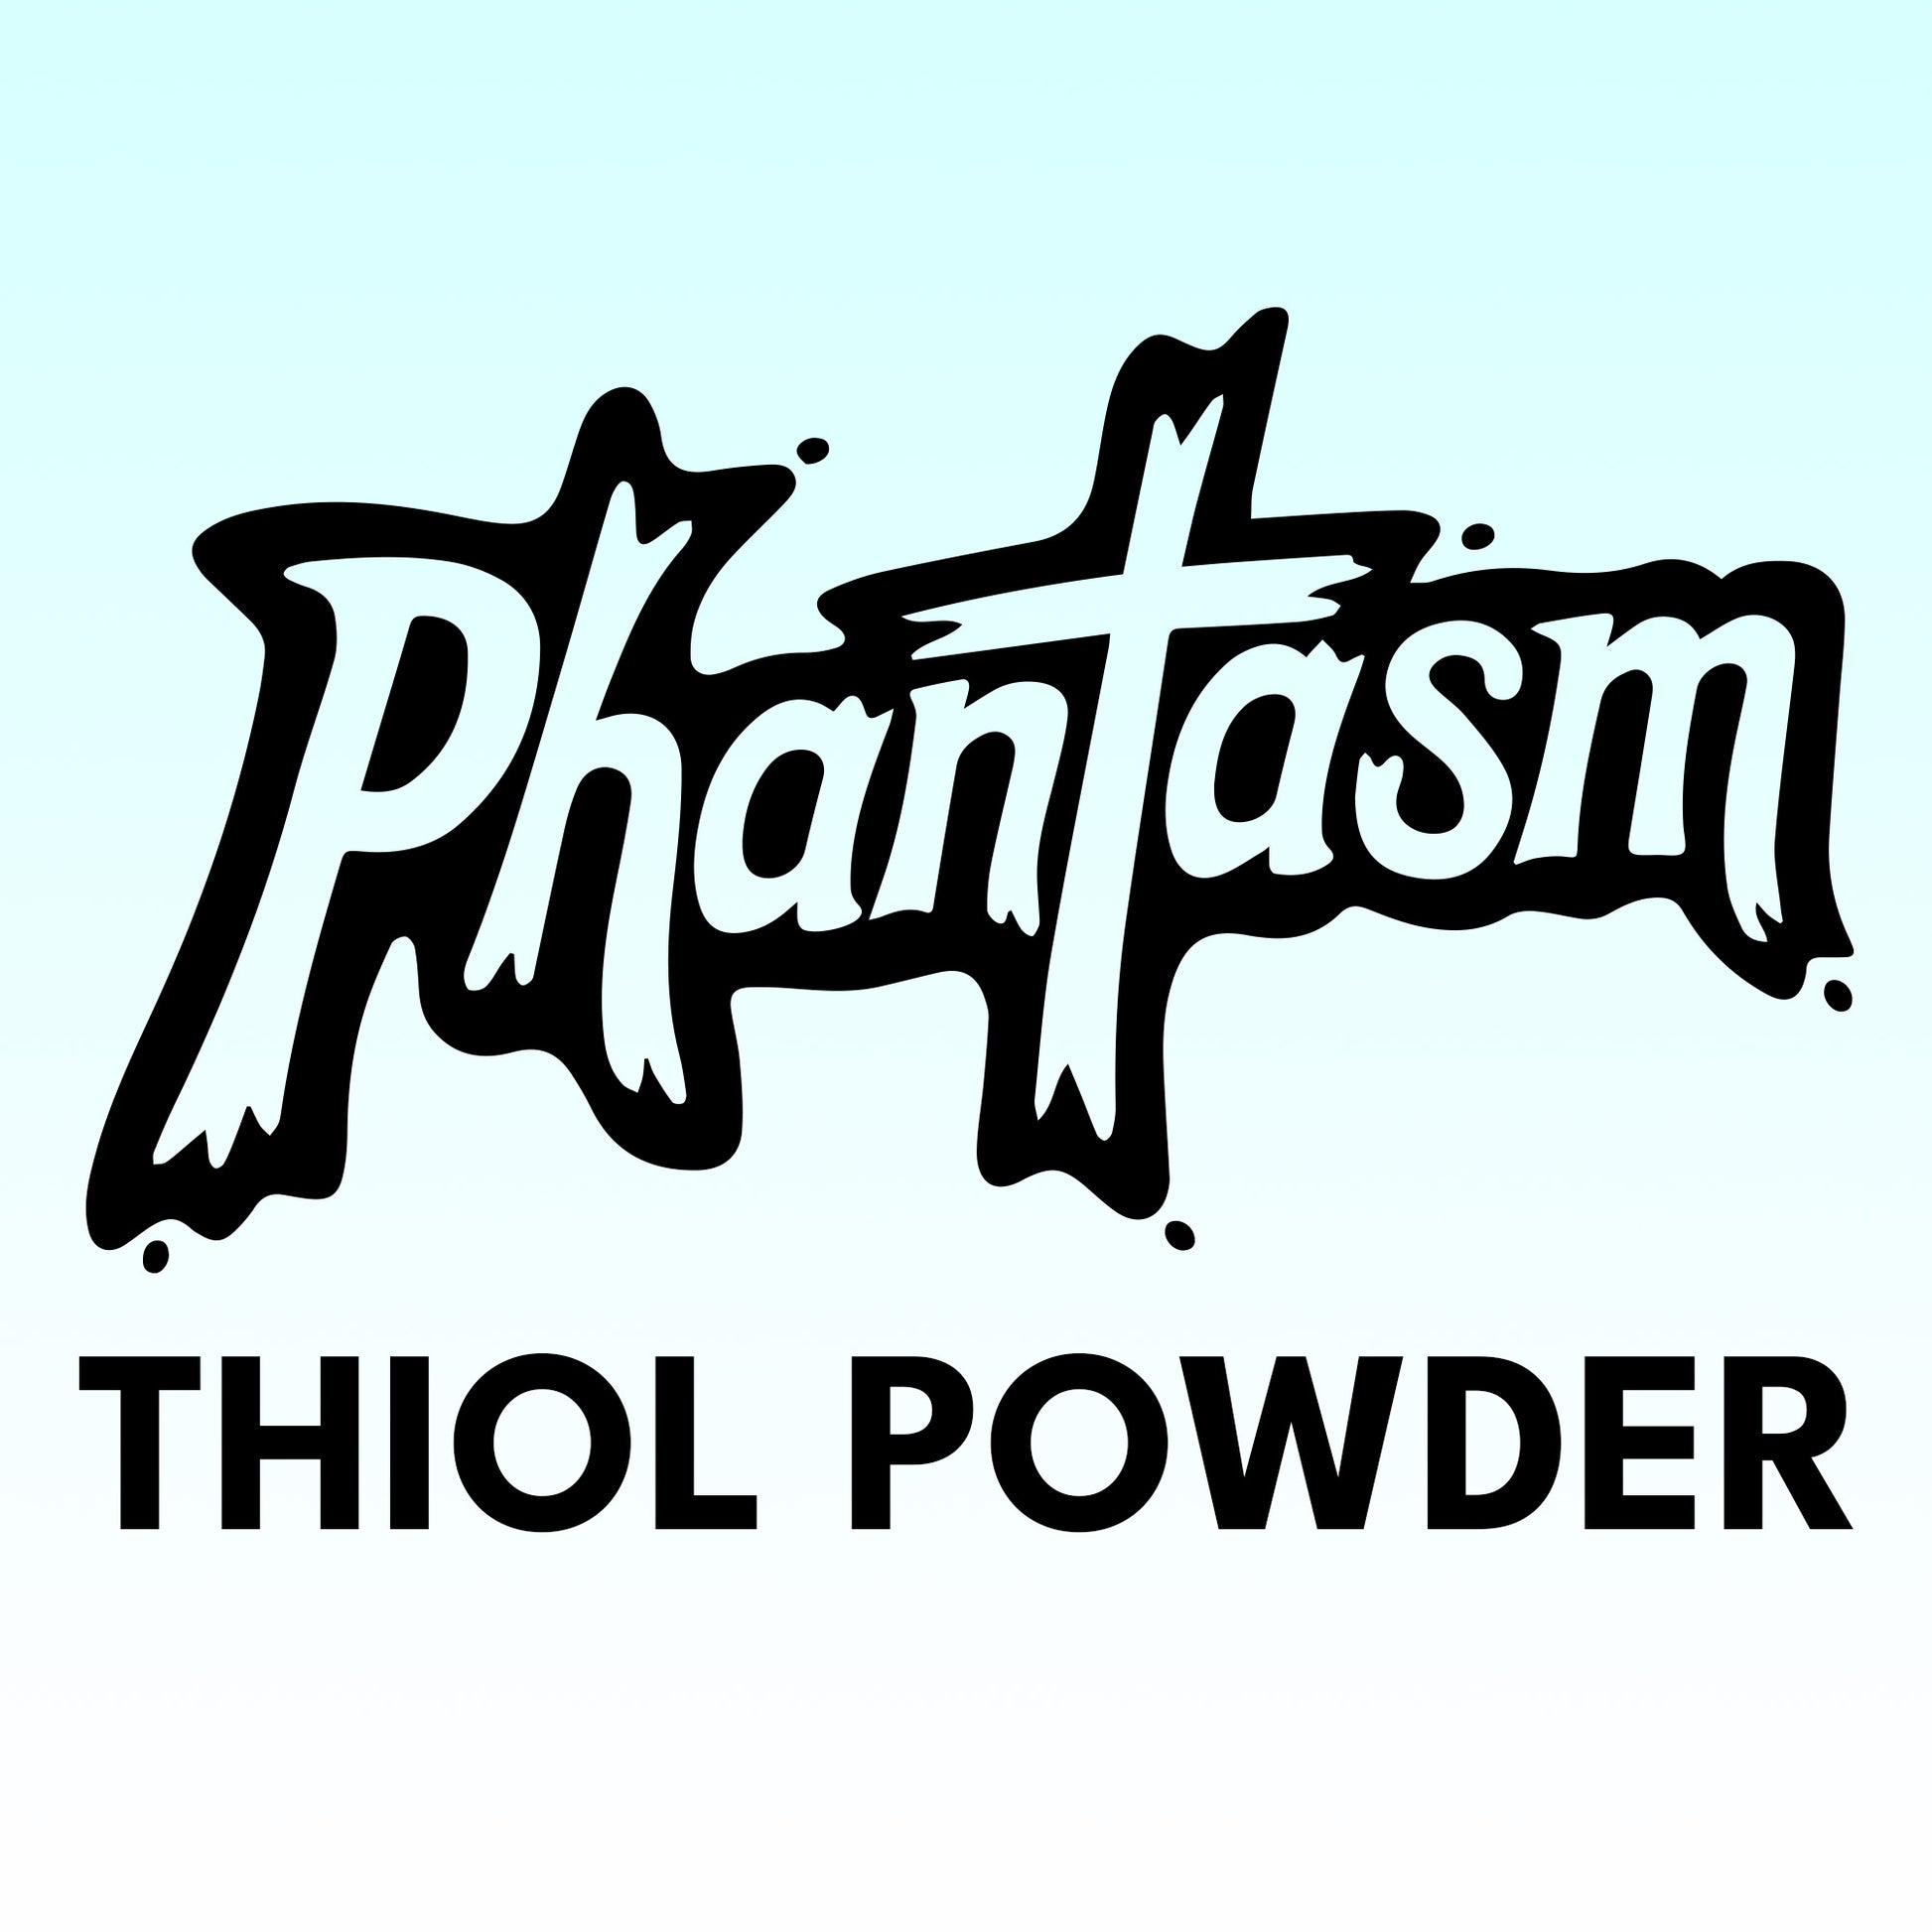 Phantasm Thiol Powder - 1 oz